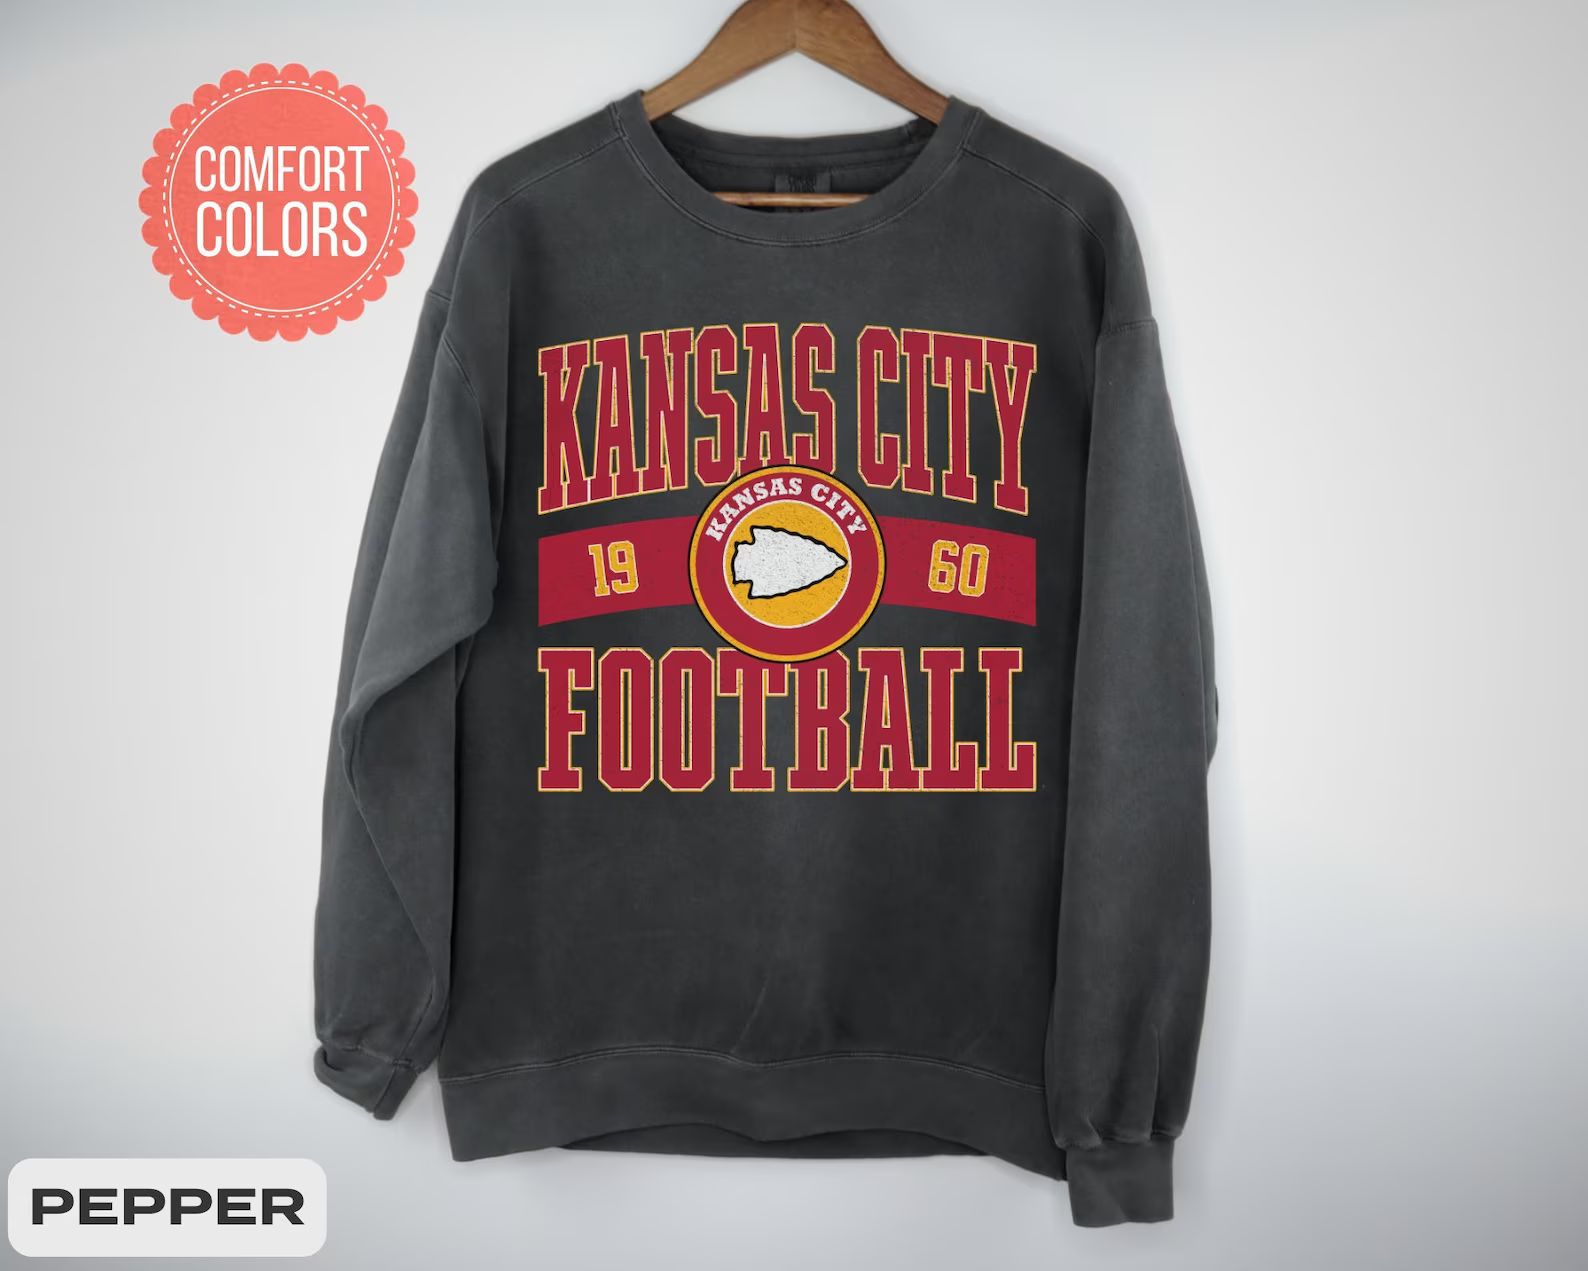 Vintage Style Kansas City Football Comfort Colors Crewneck Sweatshirt,kansas City Football Sweats... | Etsy (US)